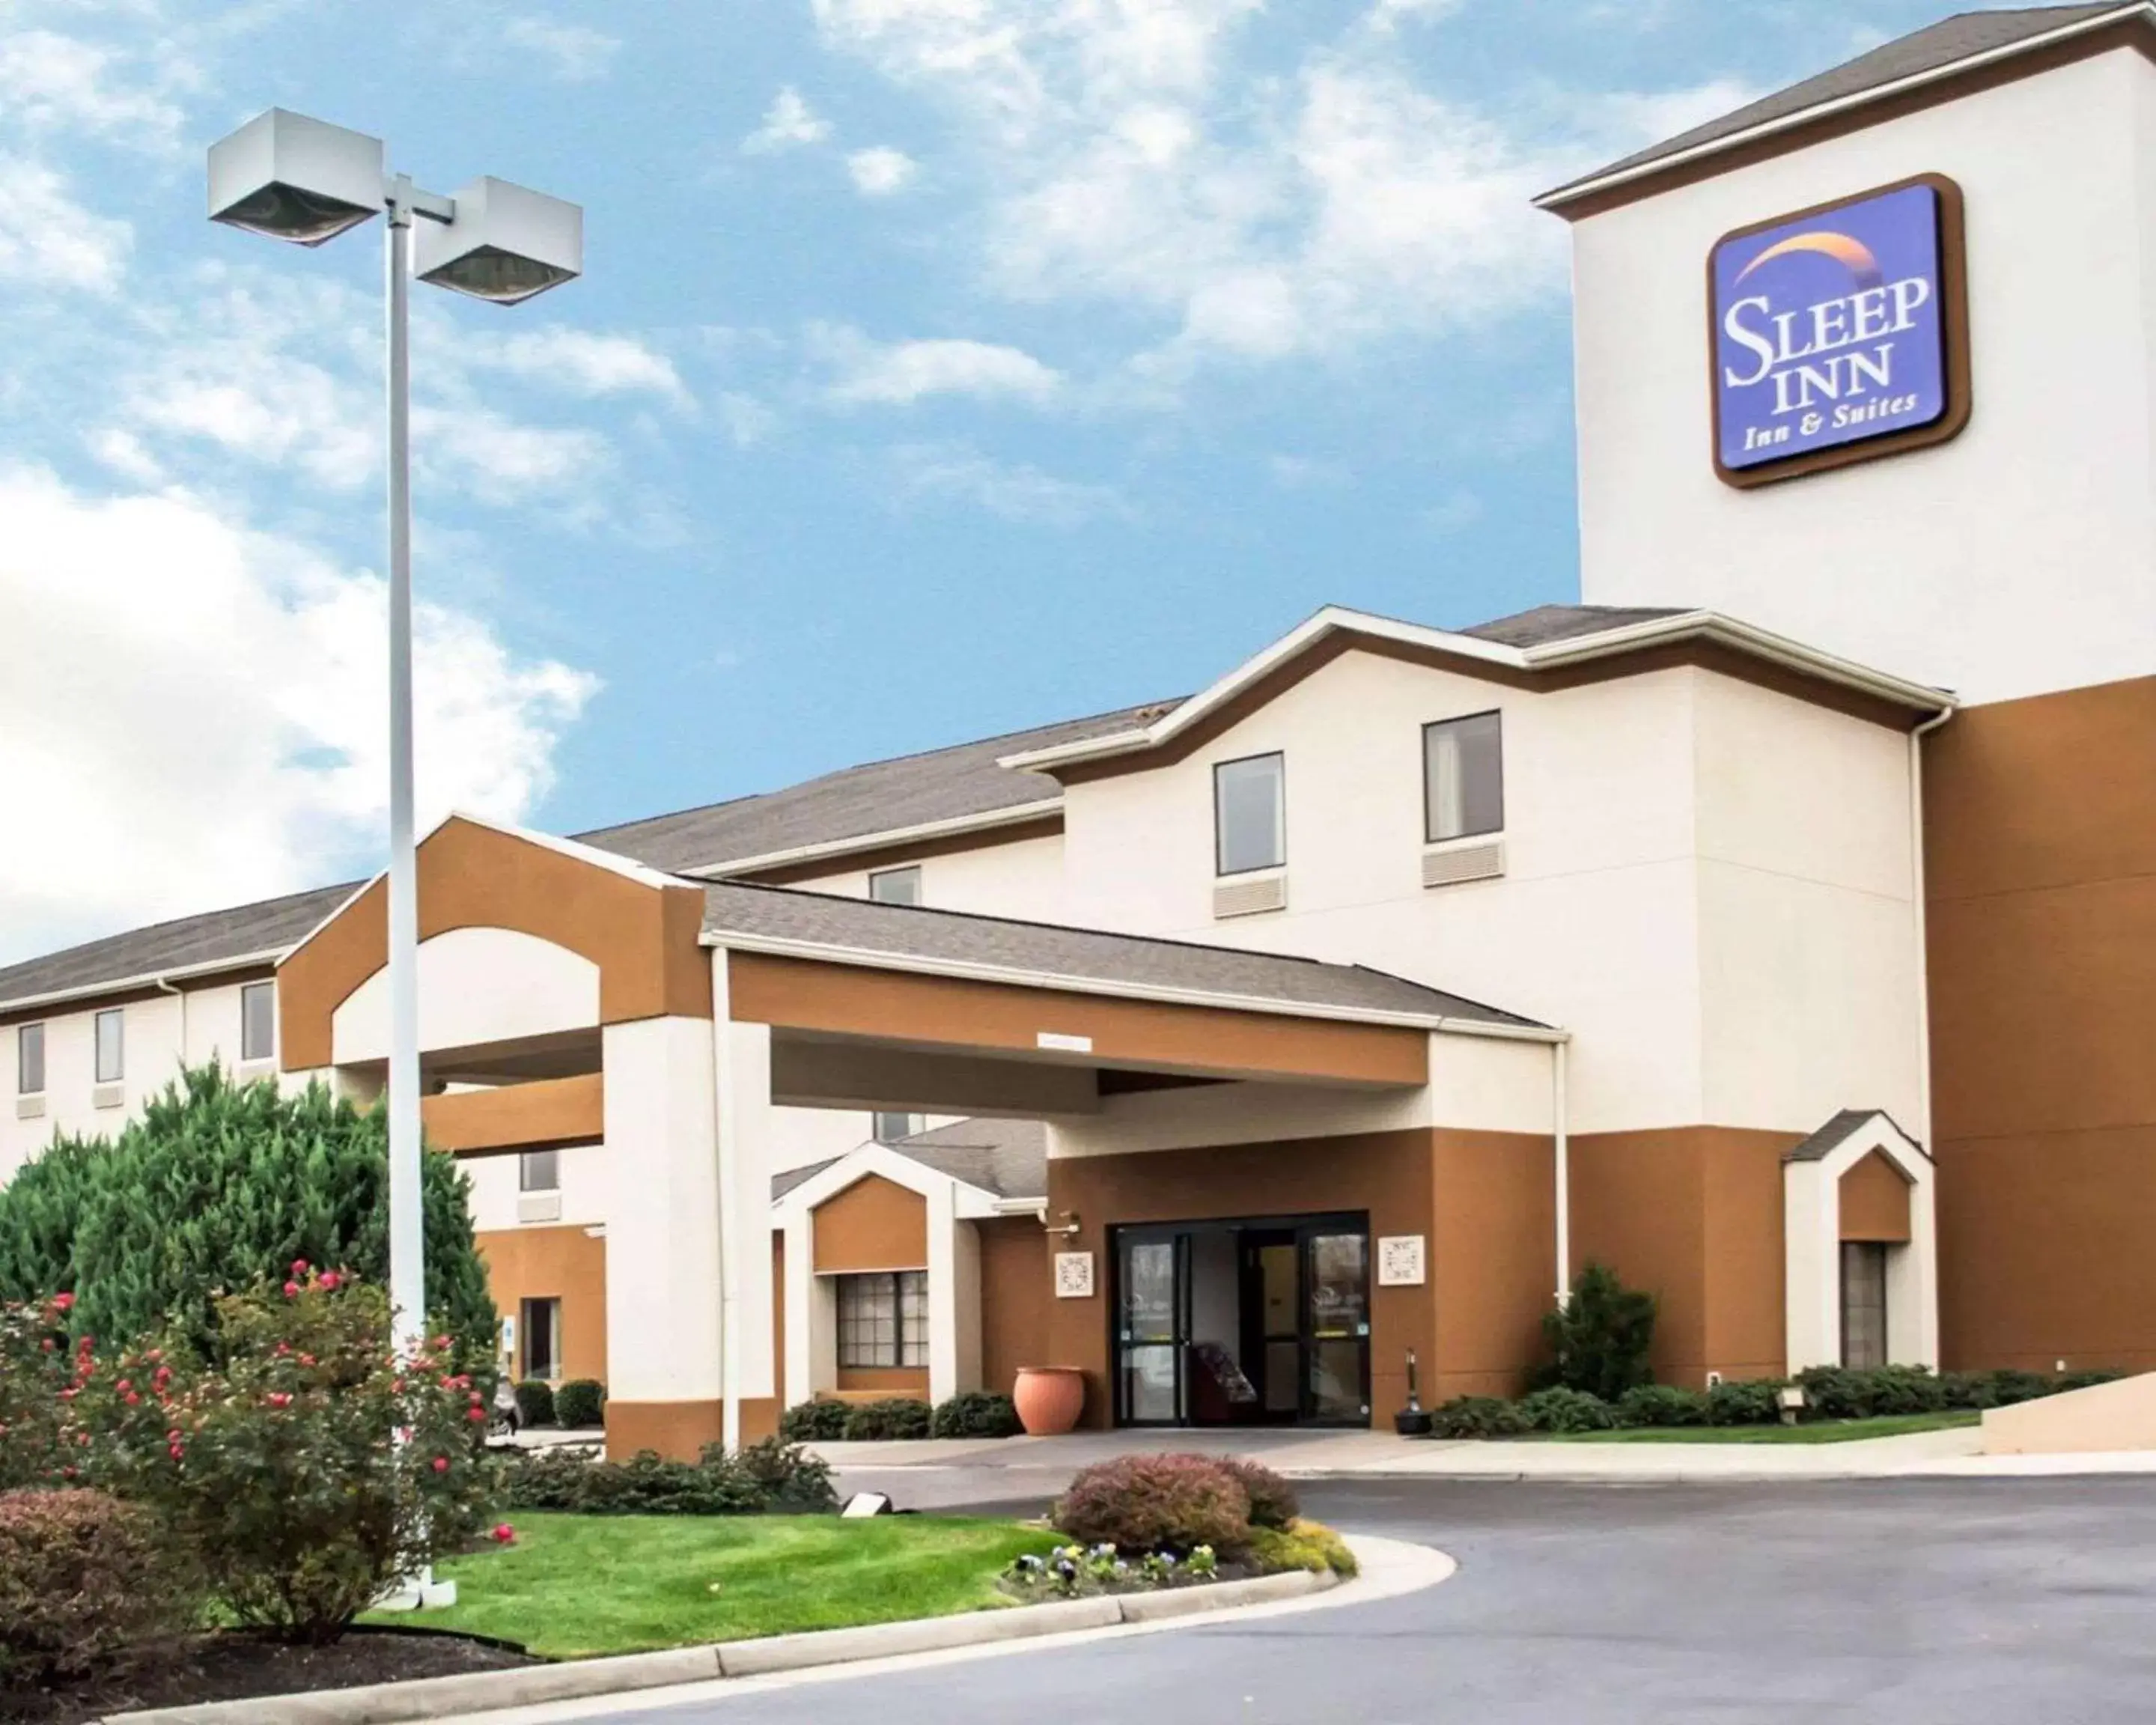 Property building in Sleep Inn & Suites Stony Creek